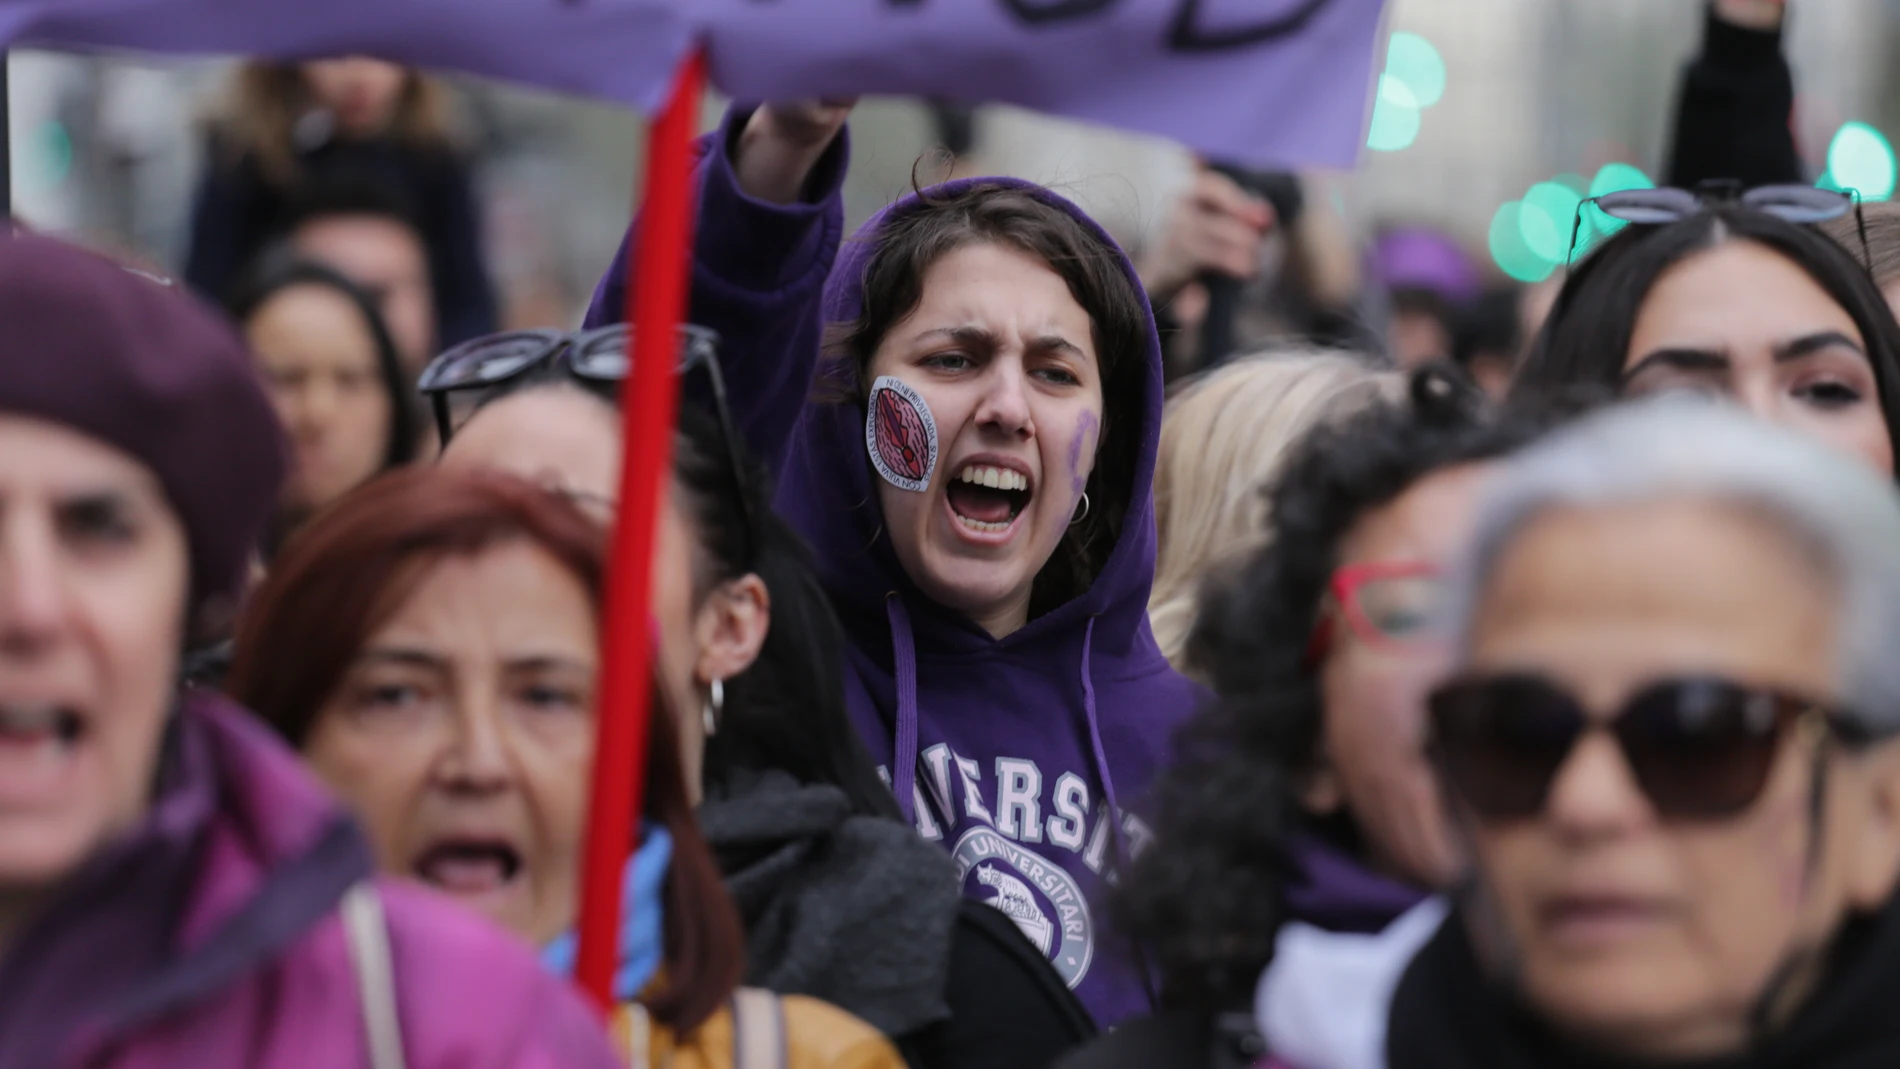 Manifestación del 8 de Marzo, día de la mujer, en Madrid